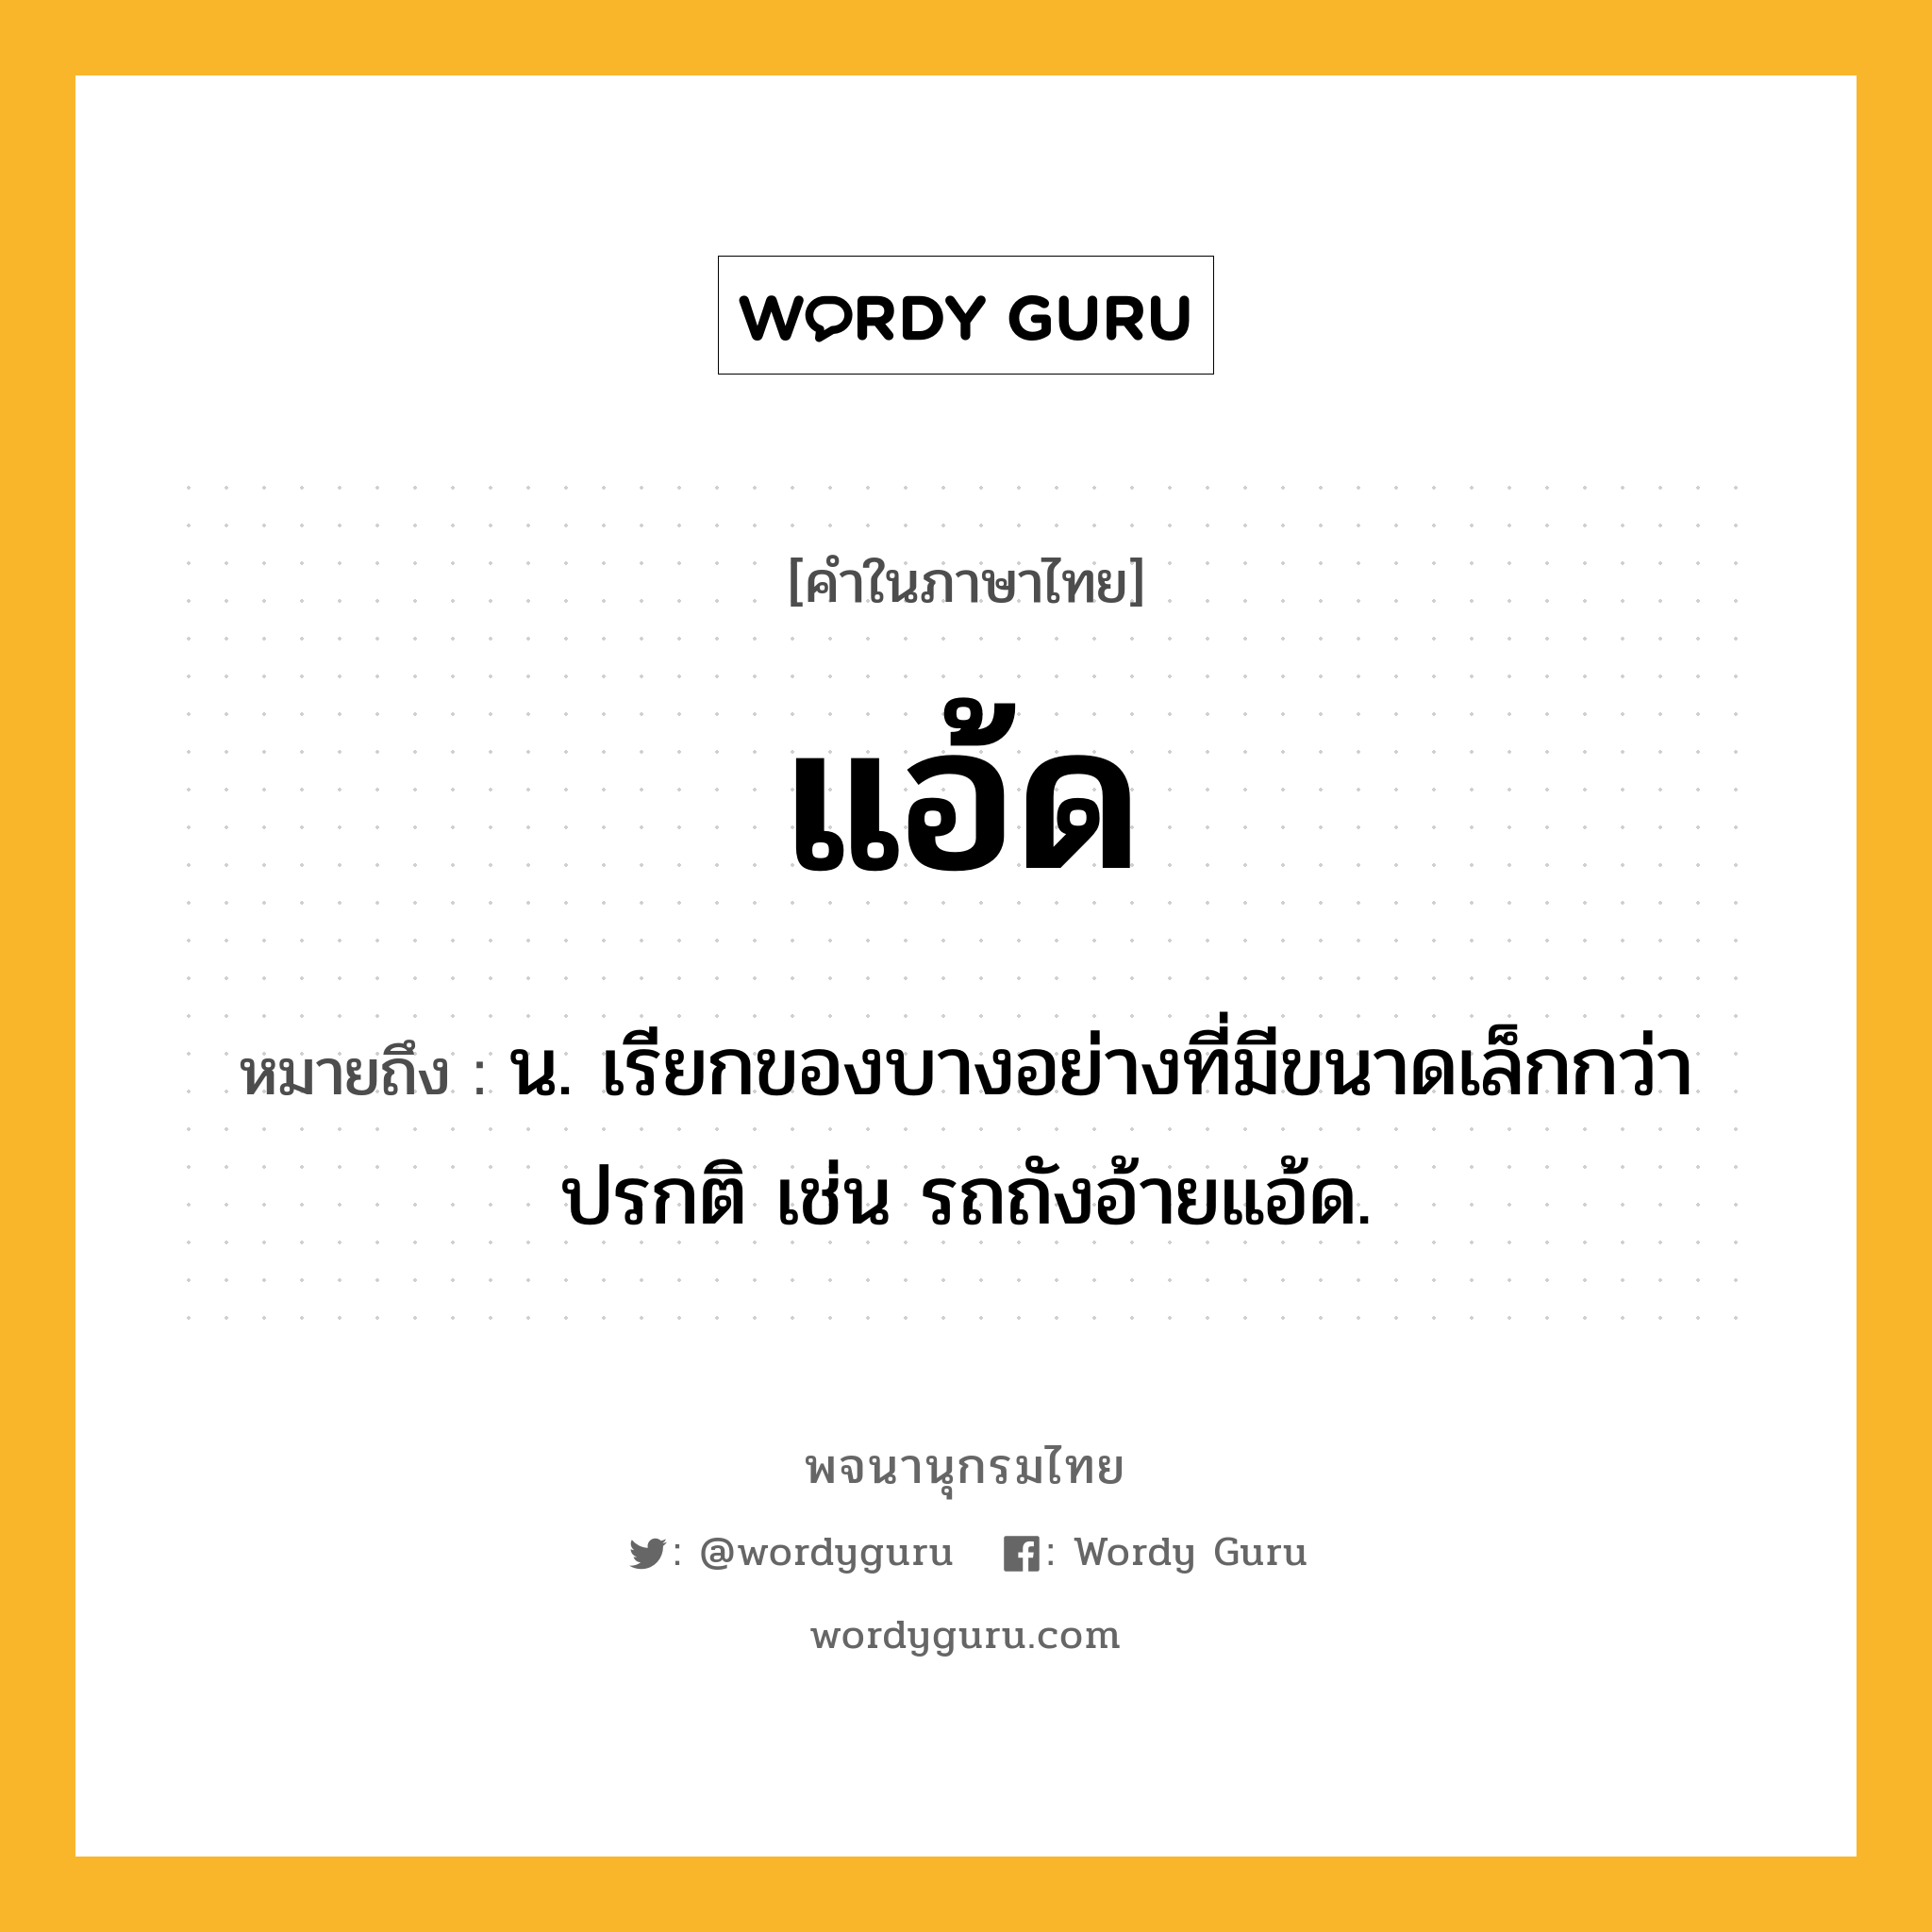 แอ้ด หมายถึงอะไร?, คำในภาษาไทย แอ้ด หมายถึง น. เรียกของบางอย่างที่มีขนาดเล็กกว่าปรกติ เช่น รถถังอ้ายแอ้ด.